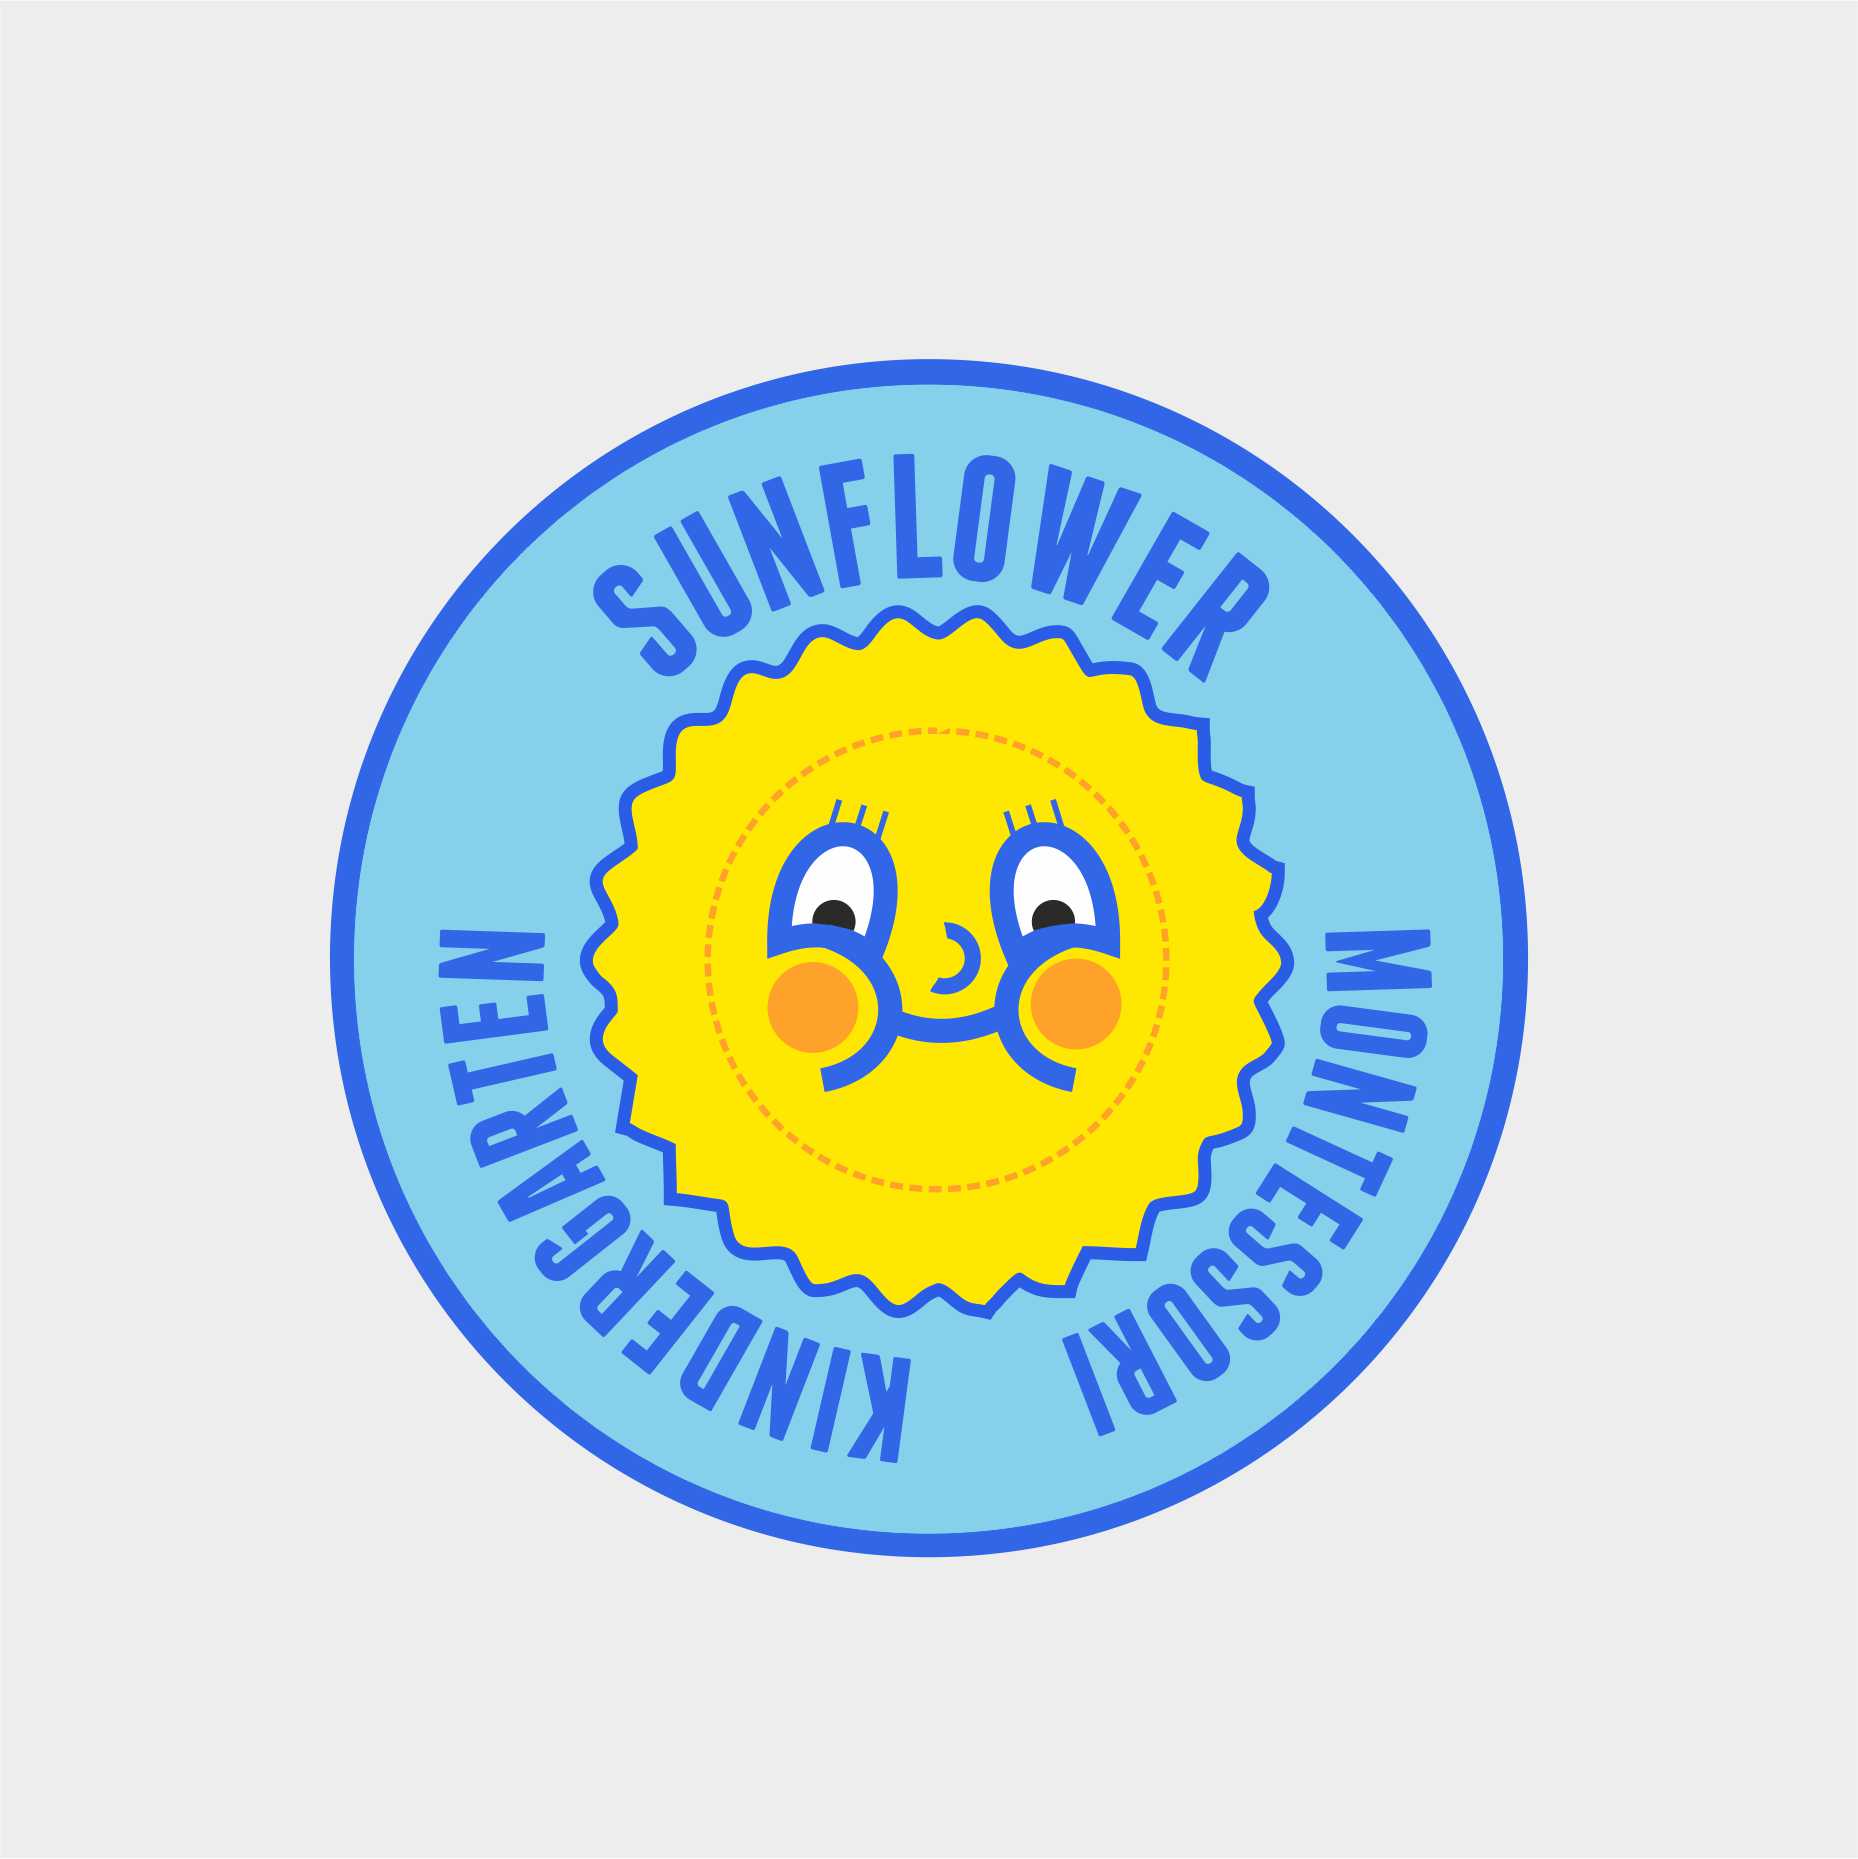 Sunflower Montesorri logo.jpg